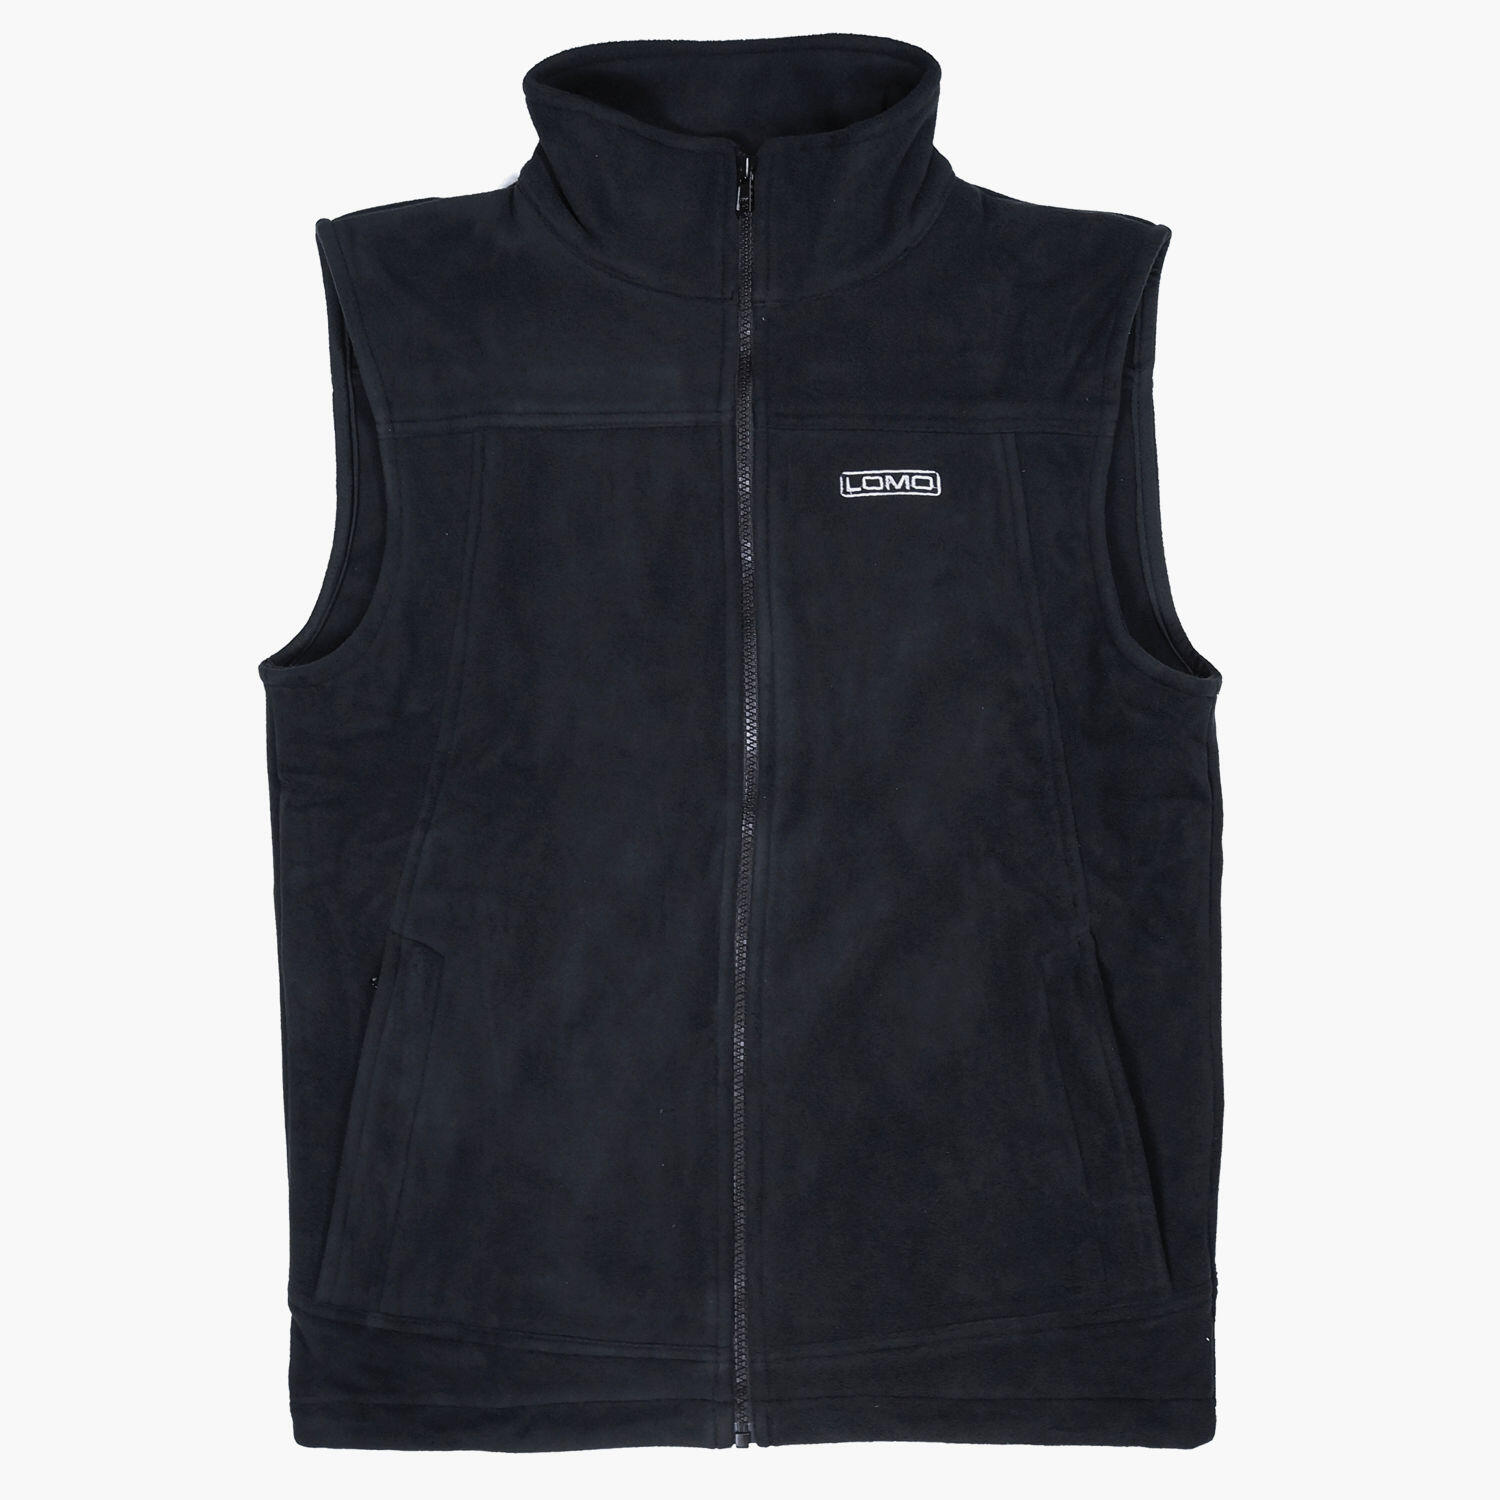 LOMO Lomo Water and Windproof Fleece Gilet Jacket